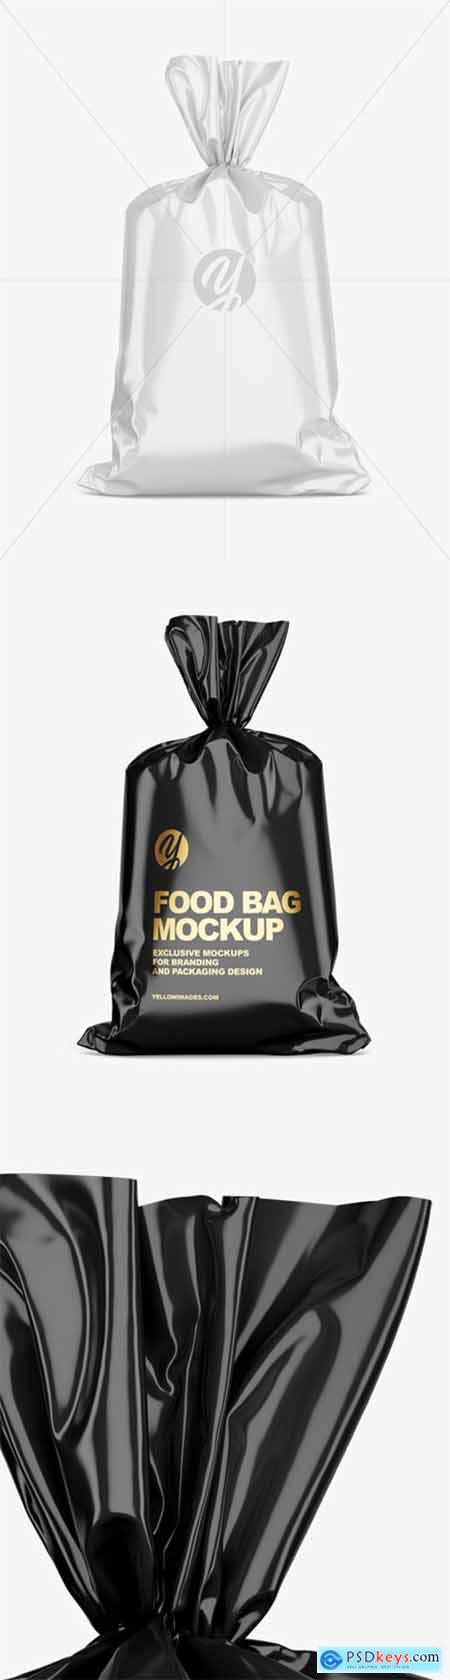 Glossy Food Bag Mockup 44236